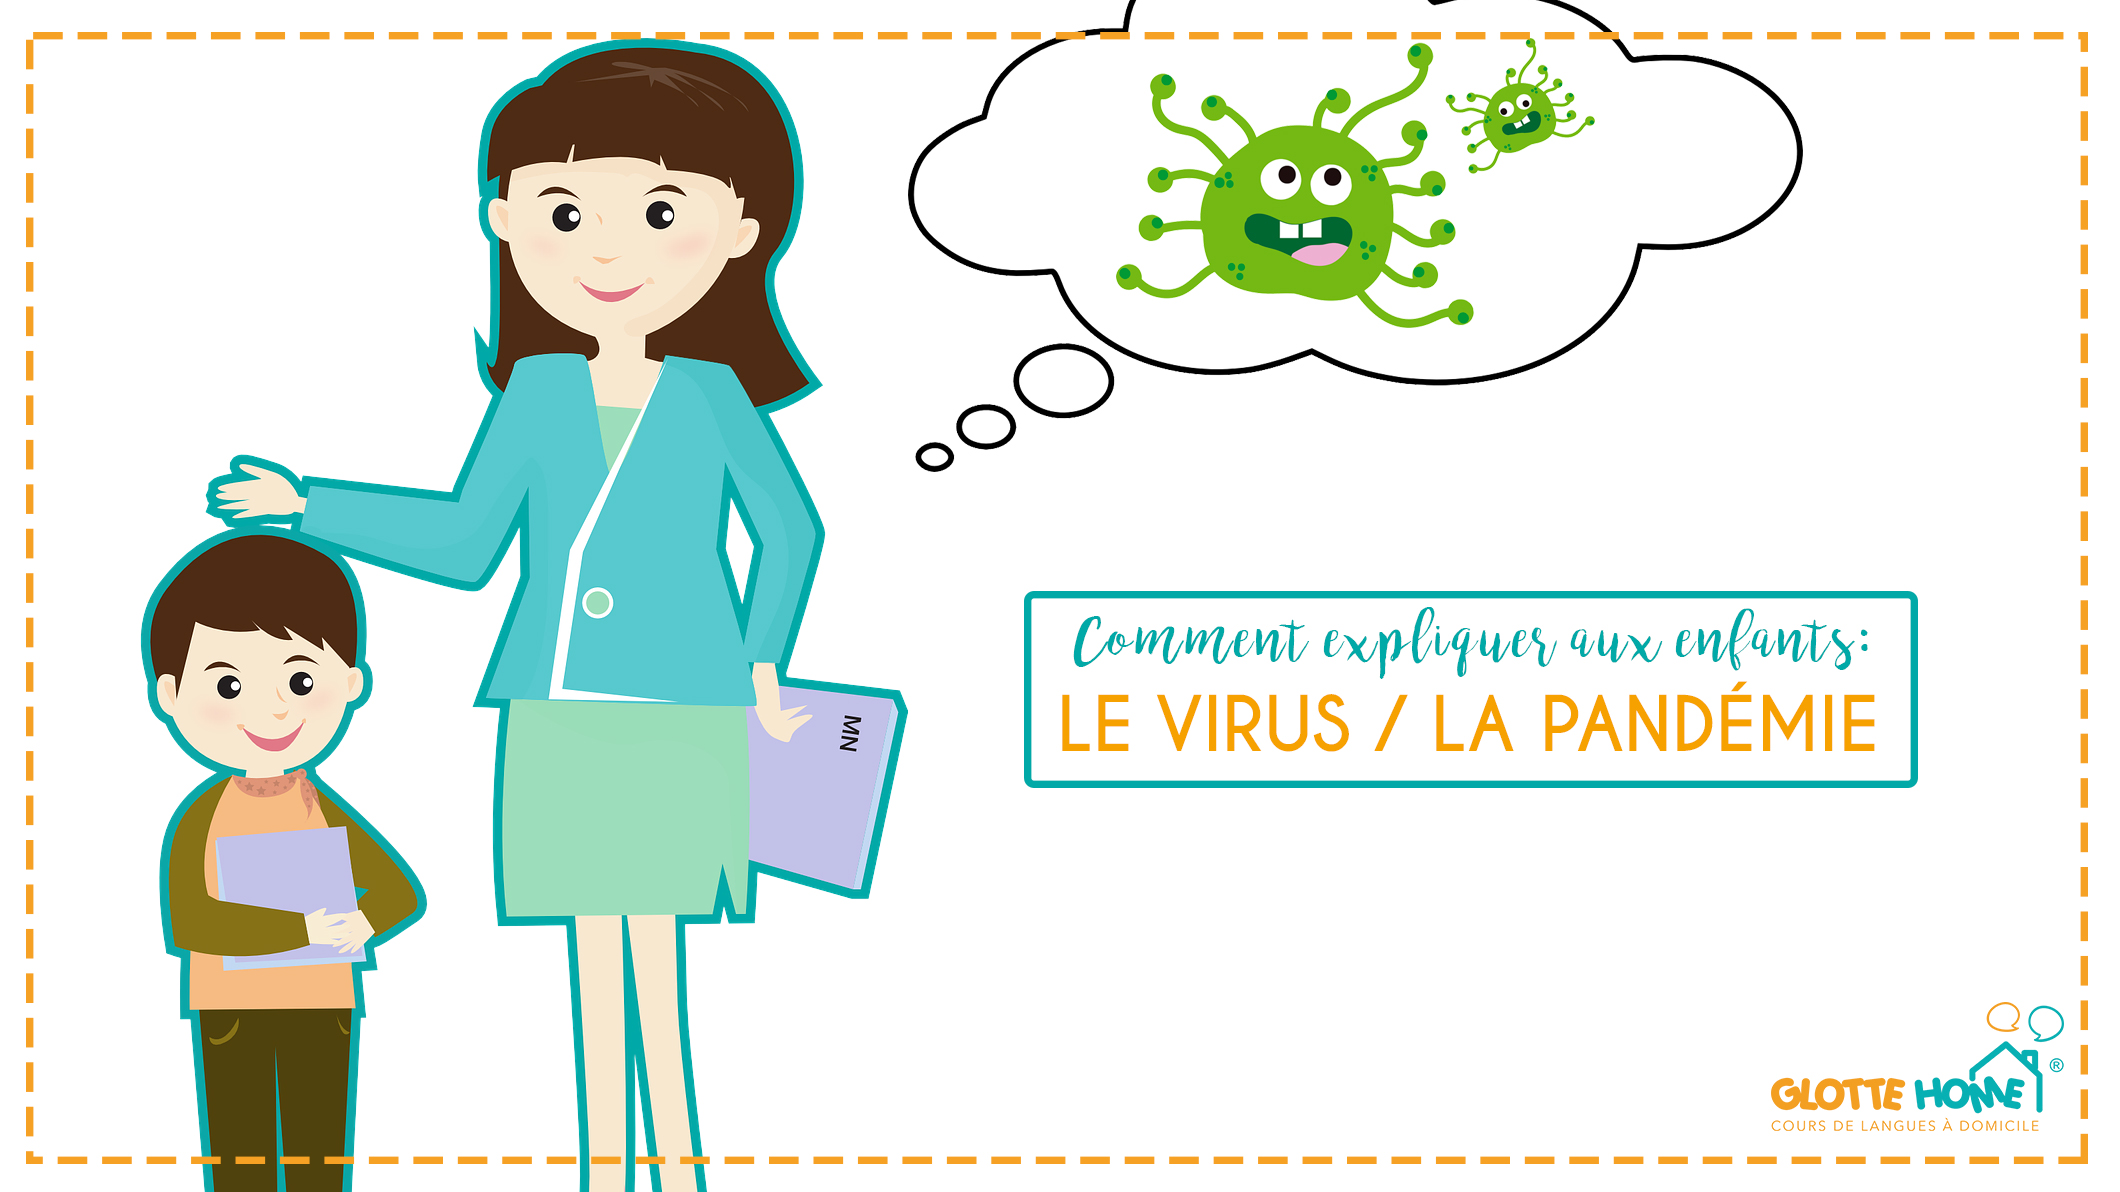 Expliquer aux enfants le virus / la pandémie